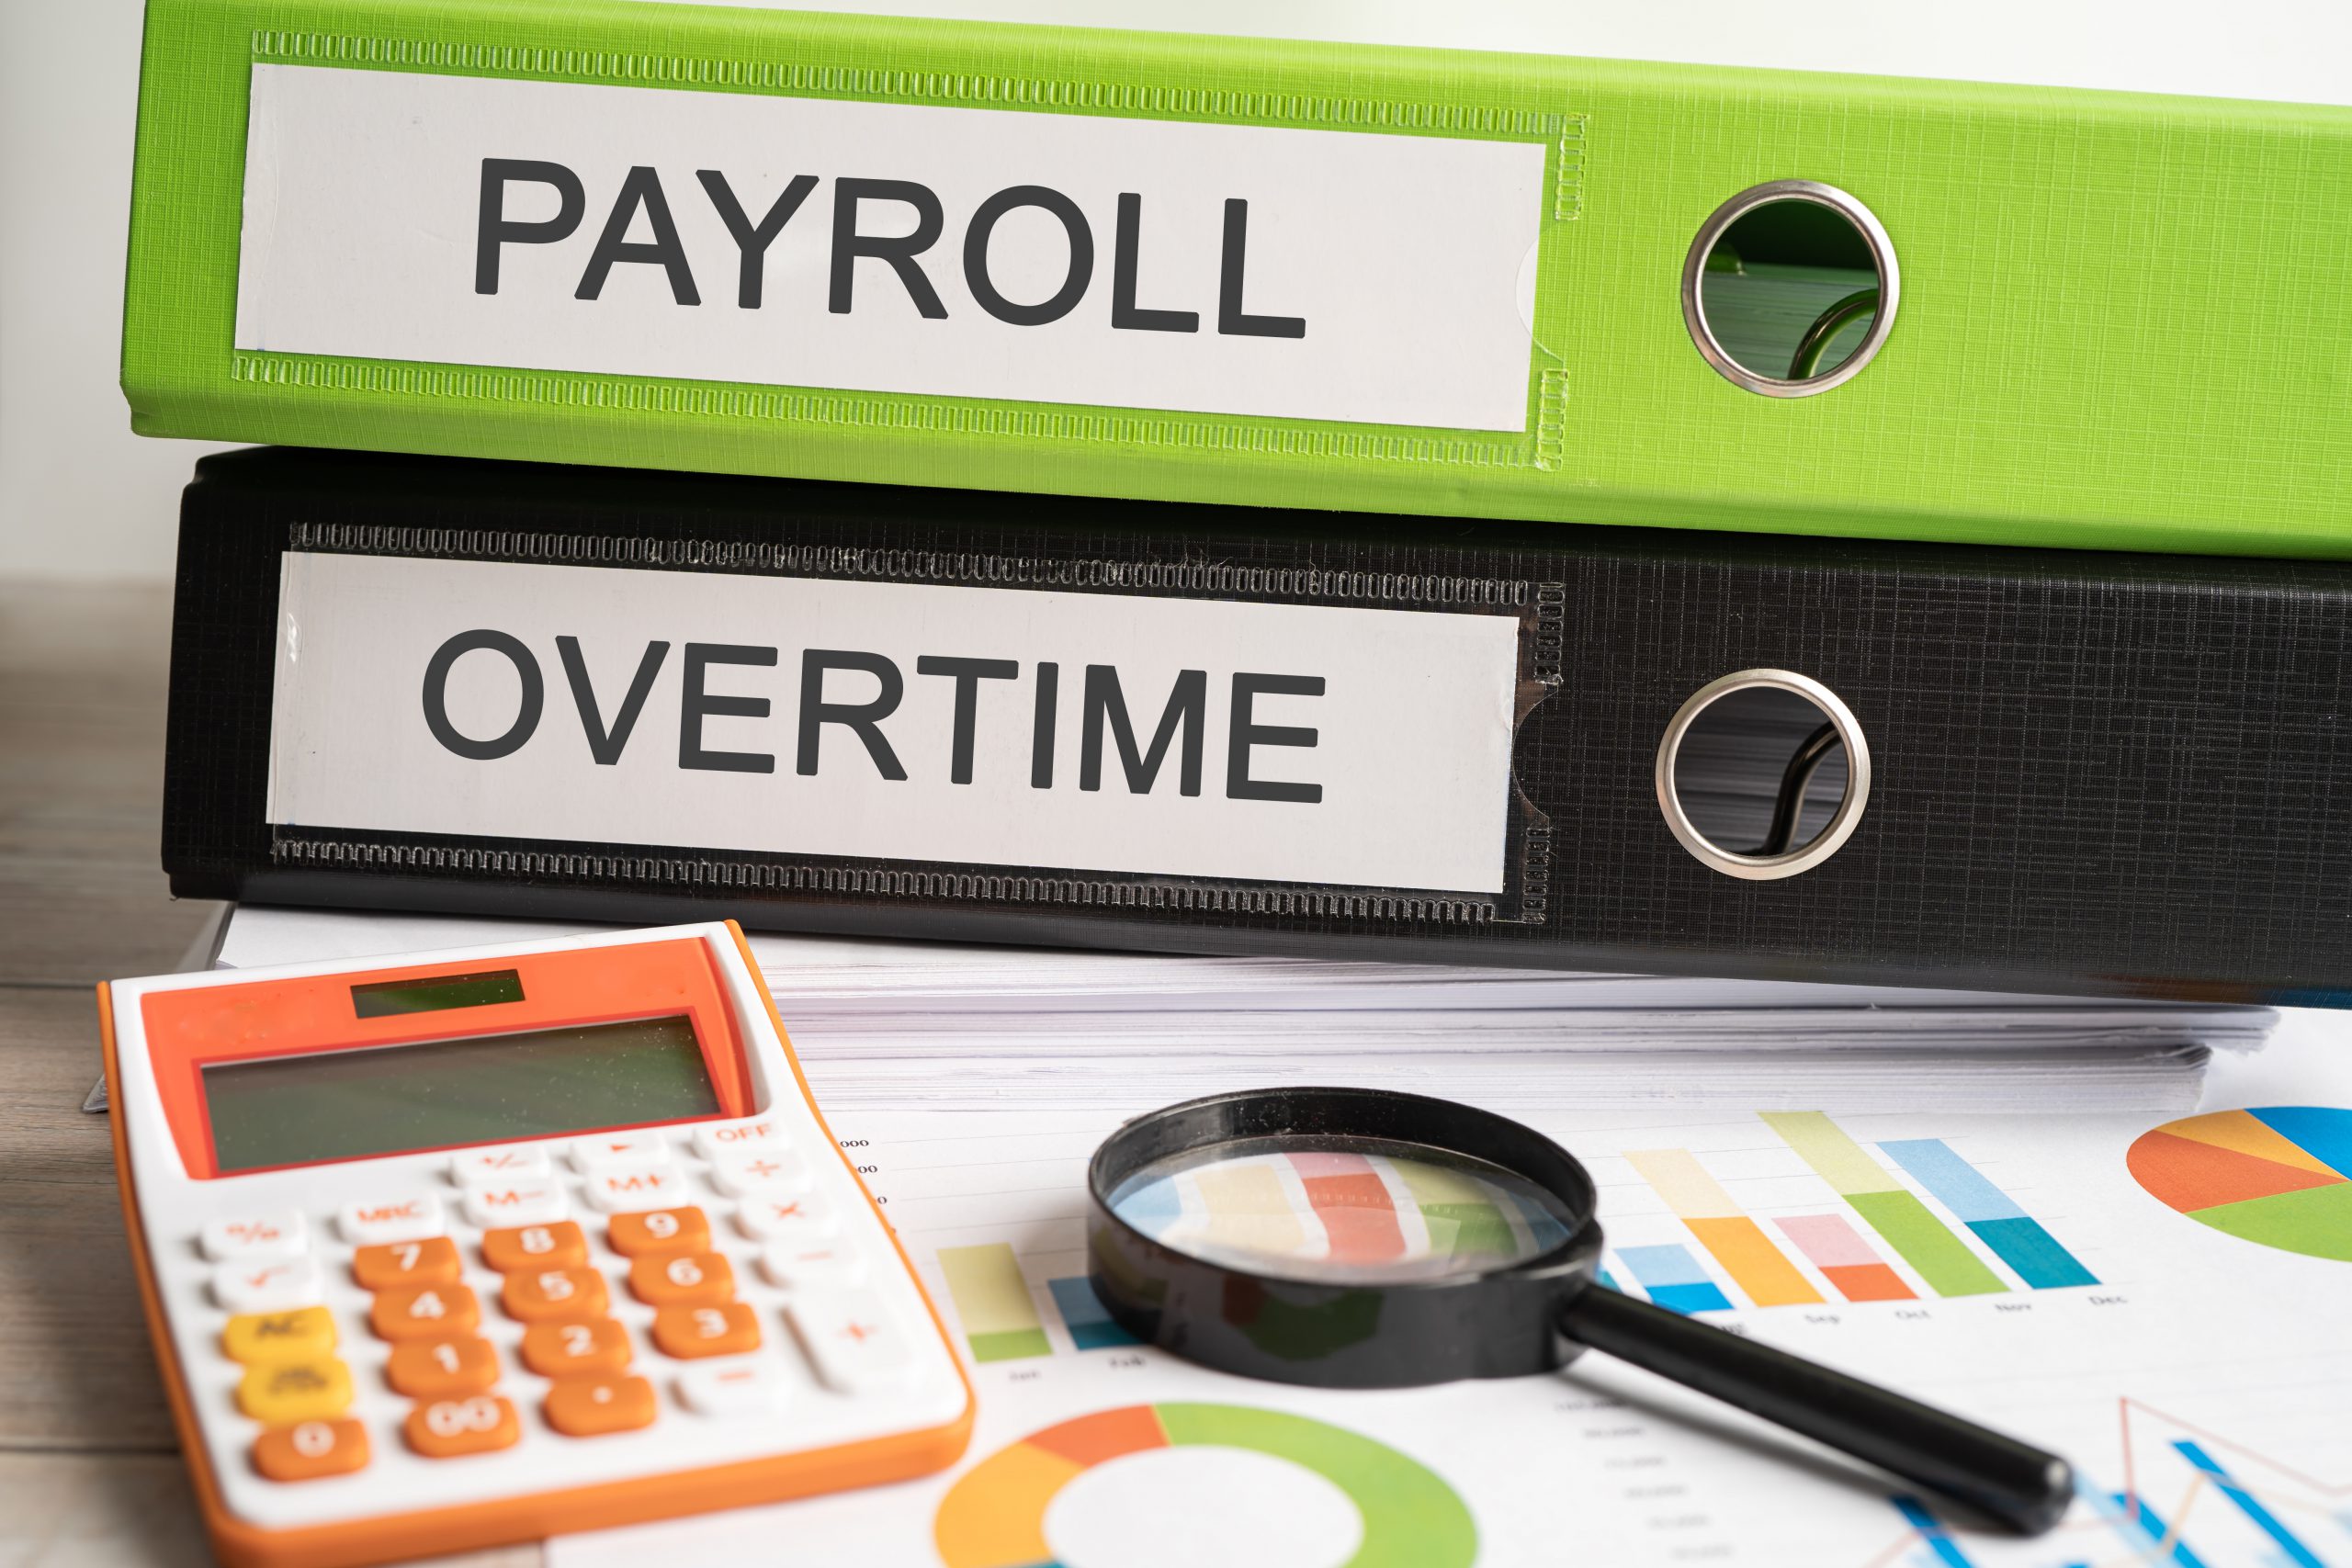 Employee Payroll Management Module in ERP Software